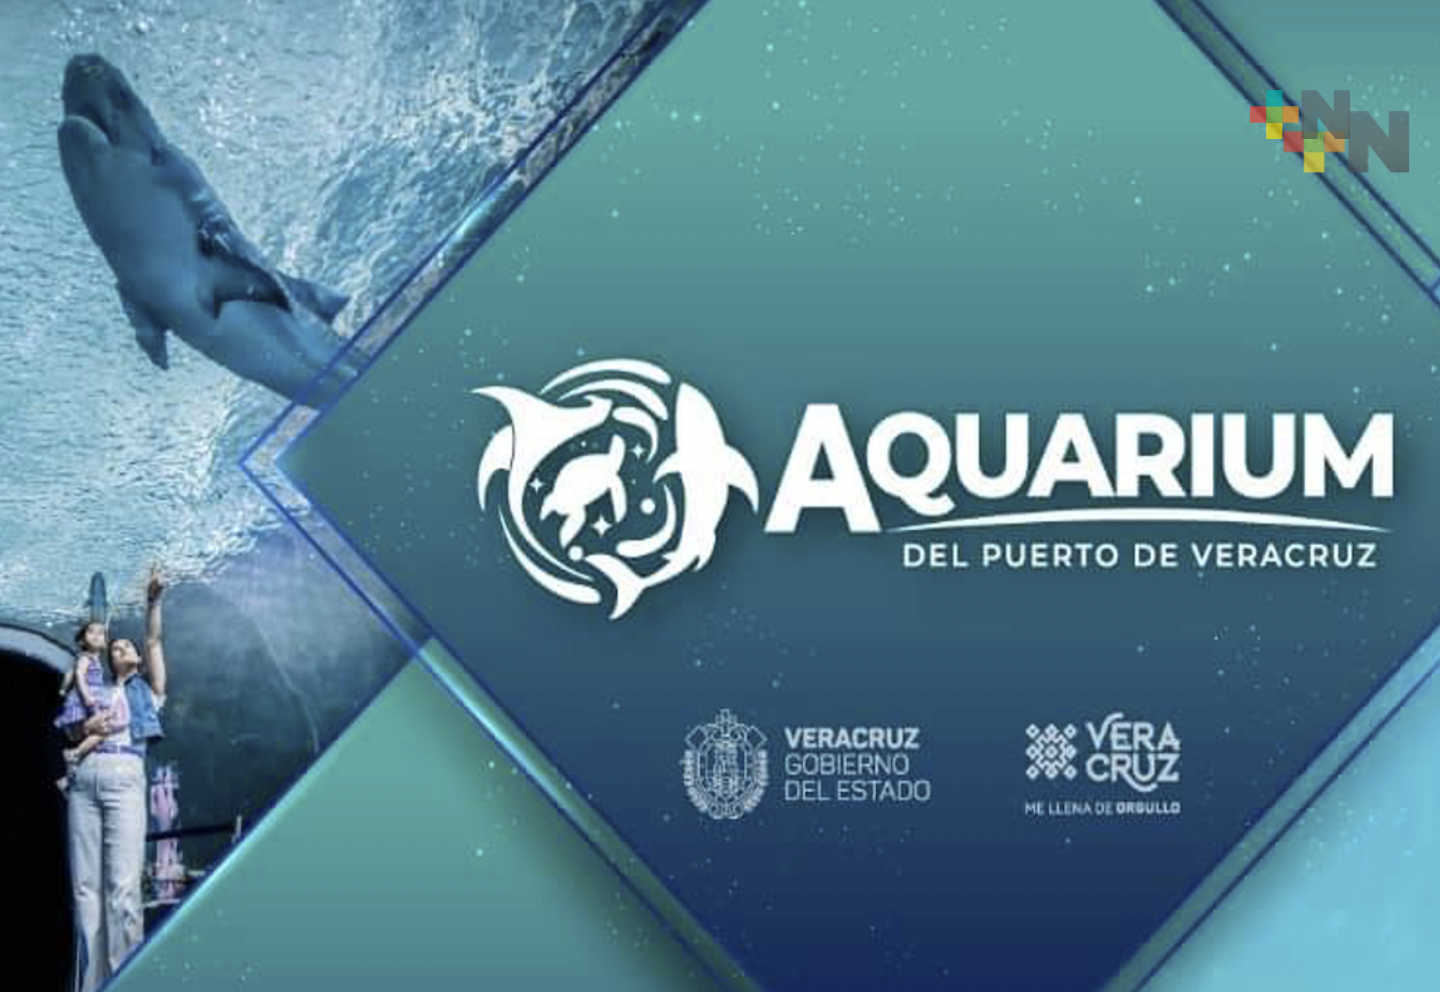 Segundo martes de cada mes, Aquarium dará acceso gratuito a 5 mil personas, previo registro